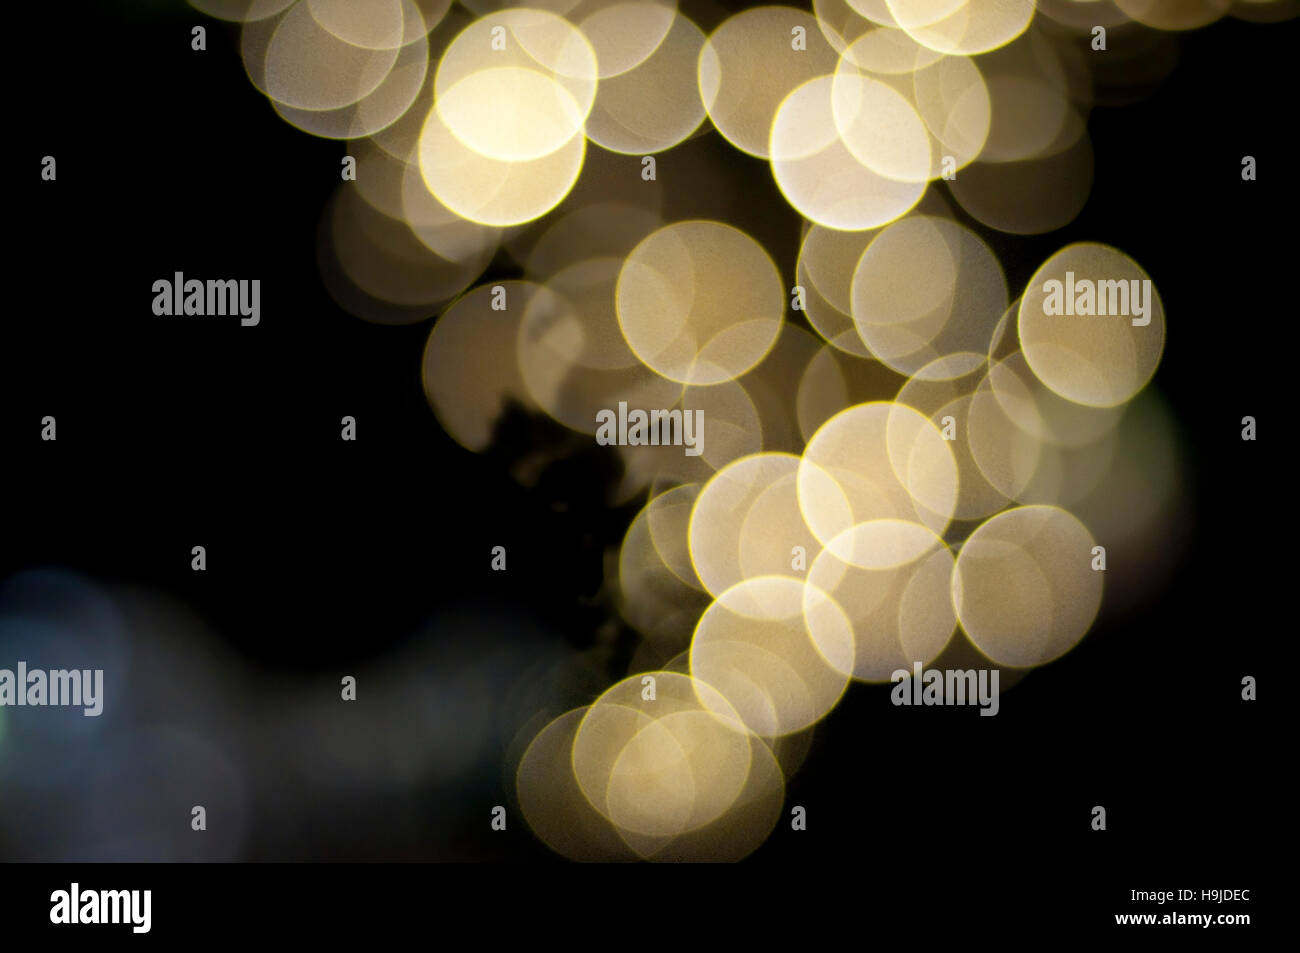 Les lumières blanches et jaunes fête boke (flou) en orientation paysage qui ressemblent à des raisins Banque D'Images